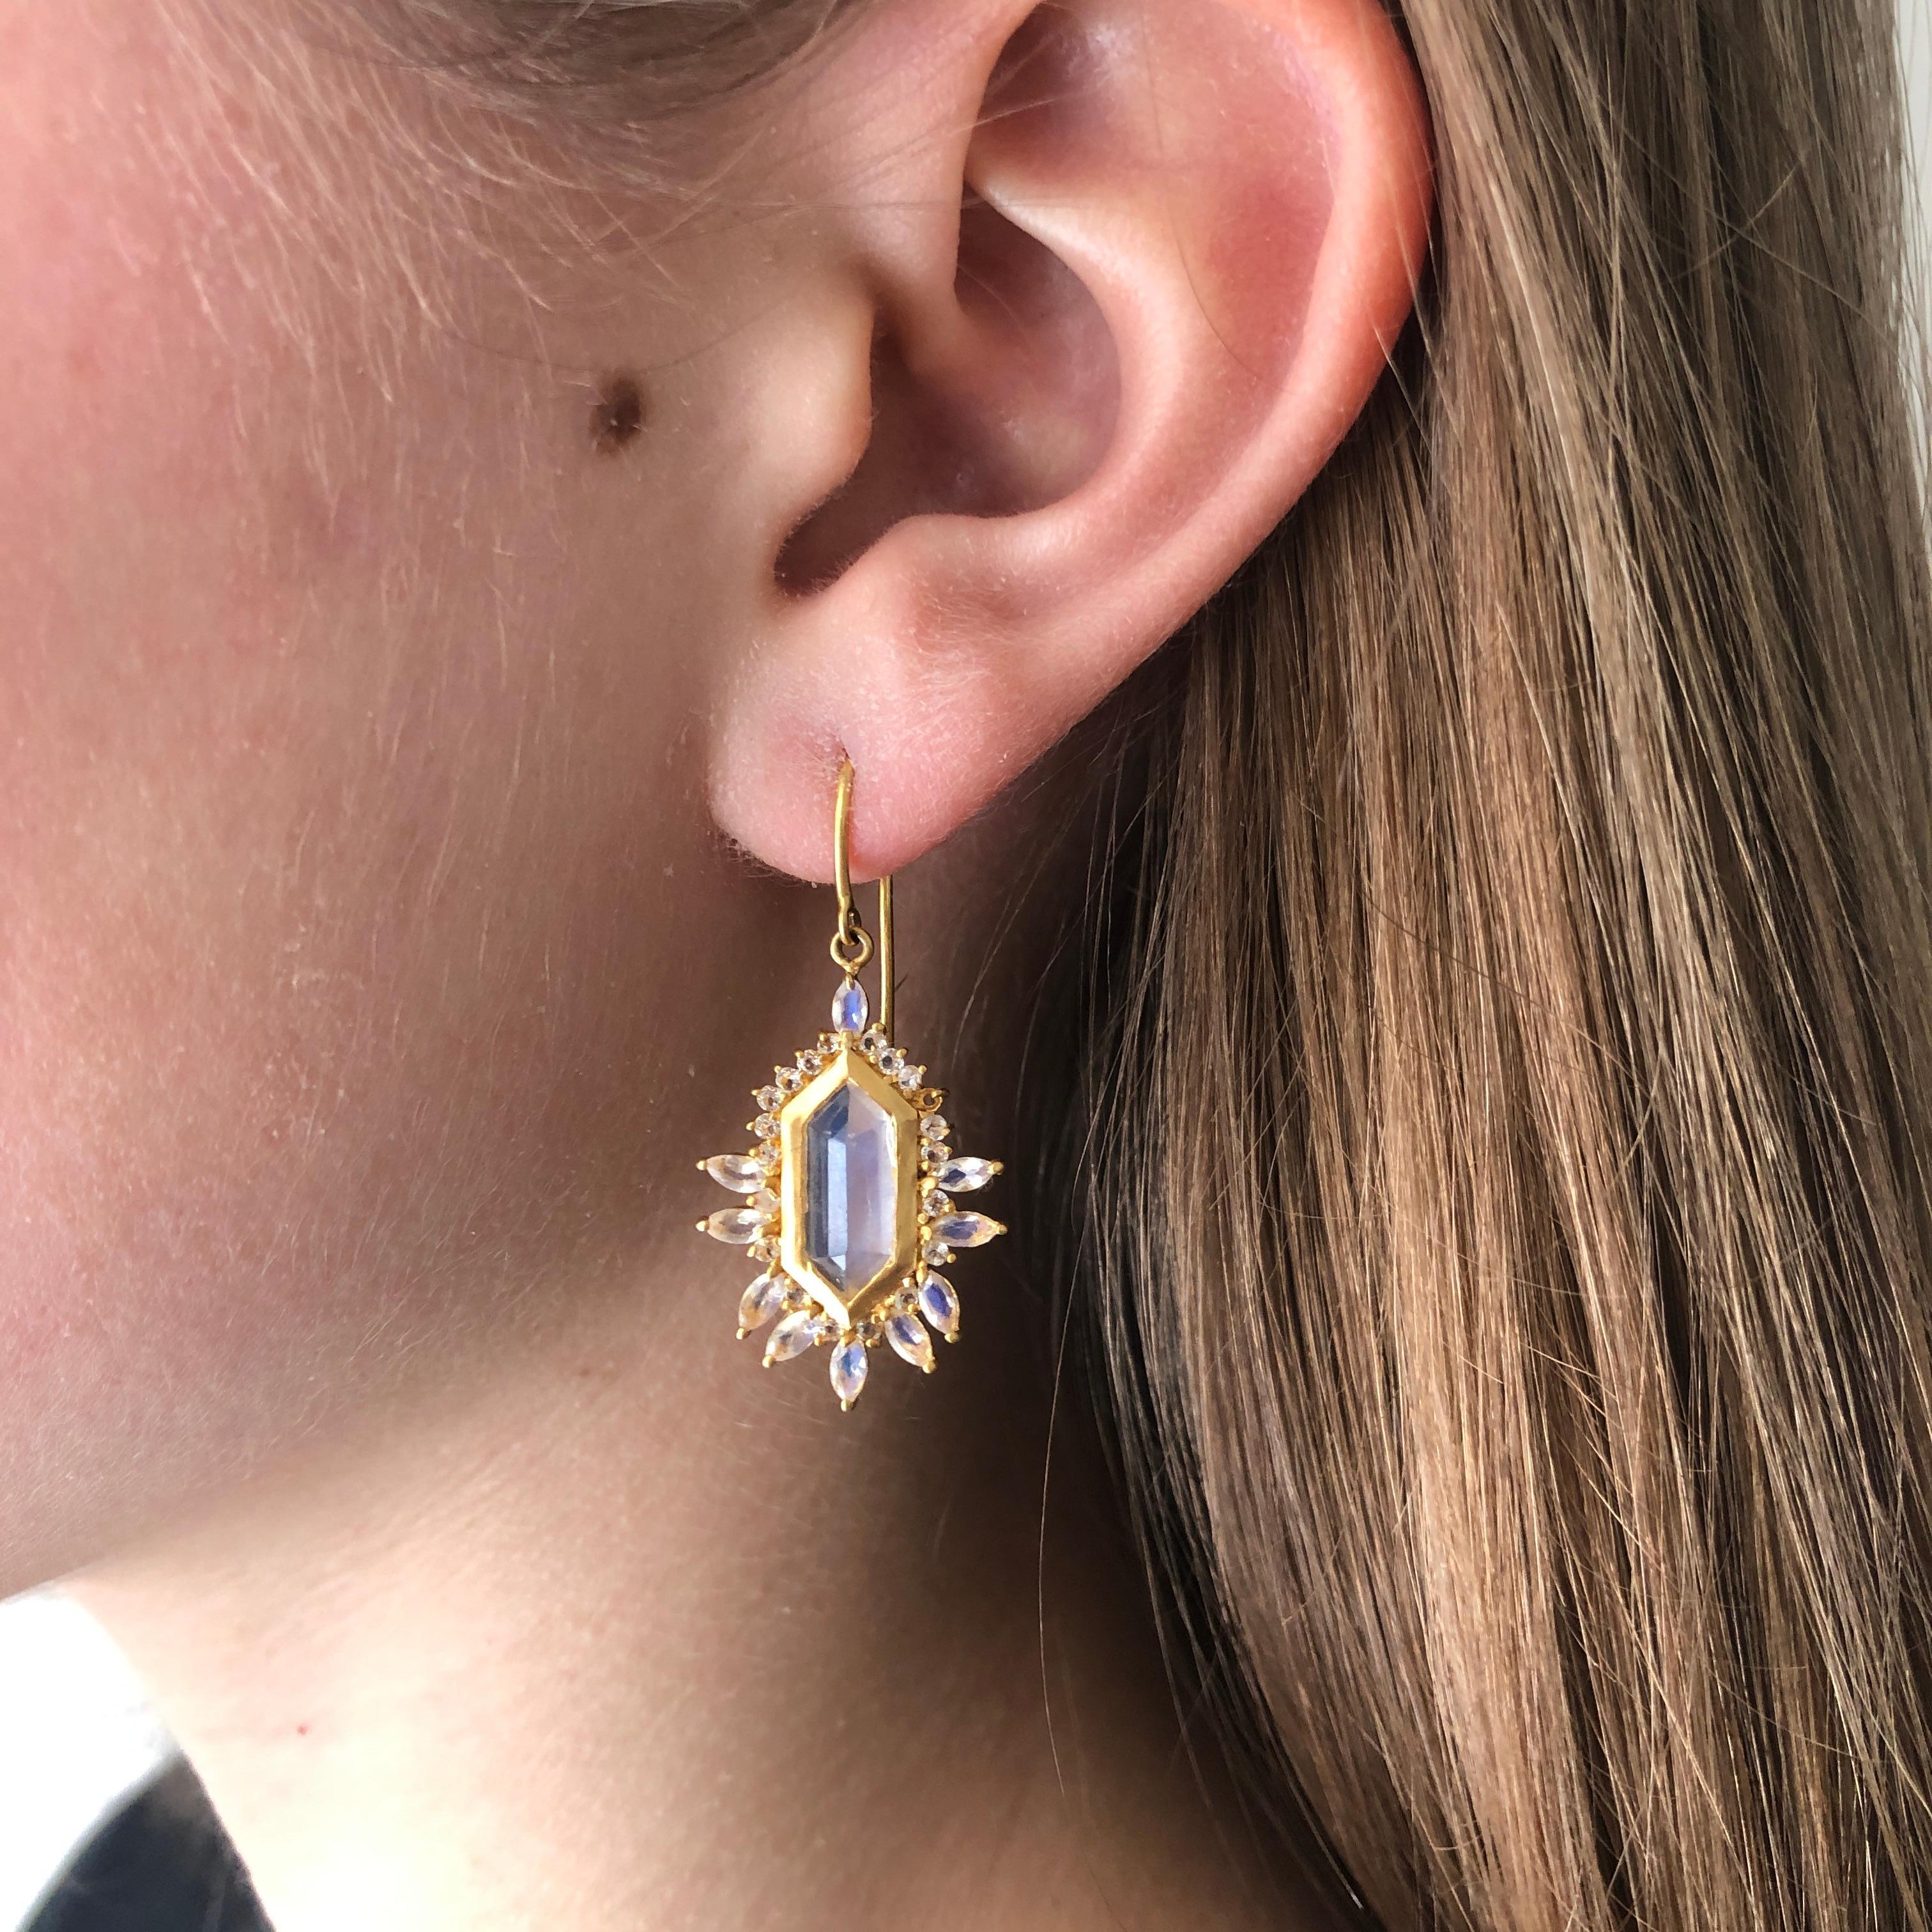 Diese Ohrringe aus 18-karätigem Gold glänzen mit atemberaubenden facettierten Regenbogen-Mondsteinen. Diese Regenbogen-Mondsteine wurden von der preisgekrönten Schmuckdesignerin Lauren Harper entworfen und leuchten mit einem hellen Mondsteinblitz. 